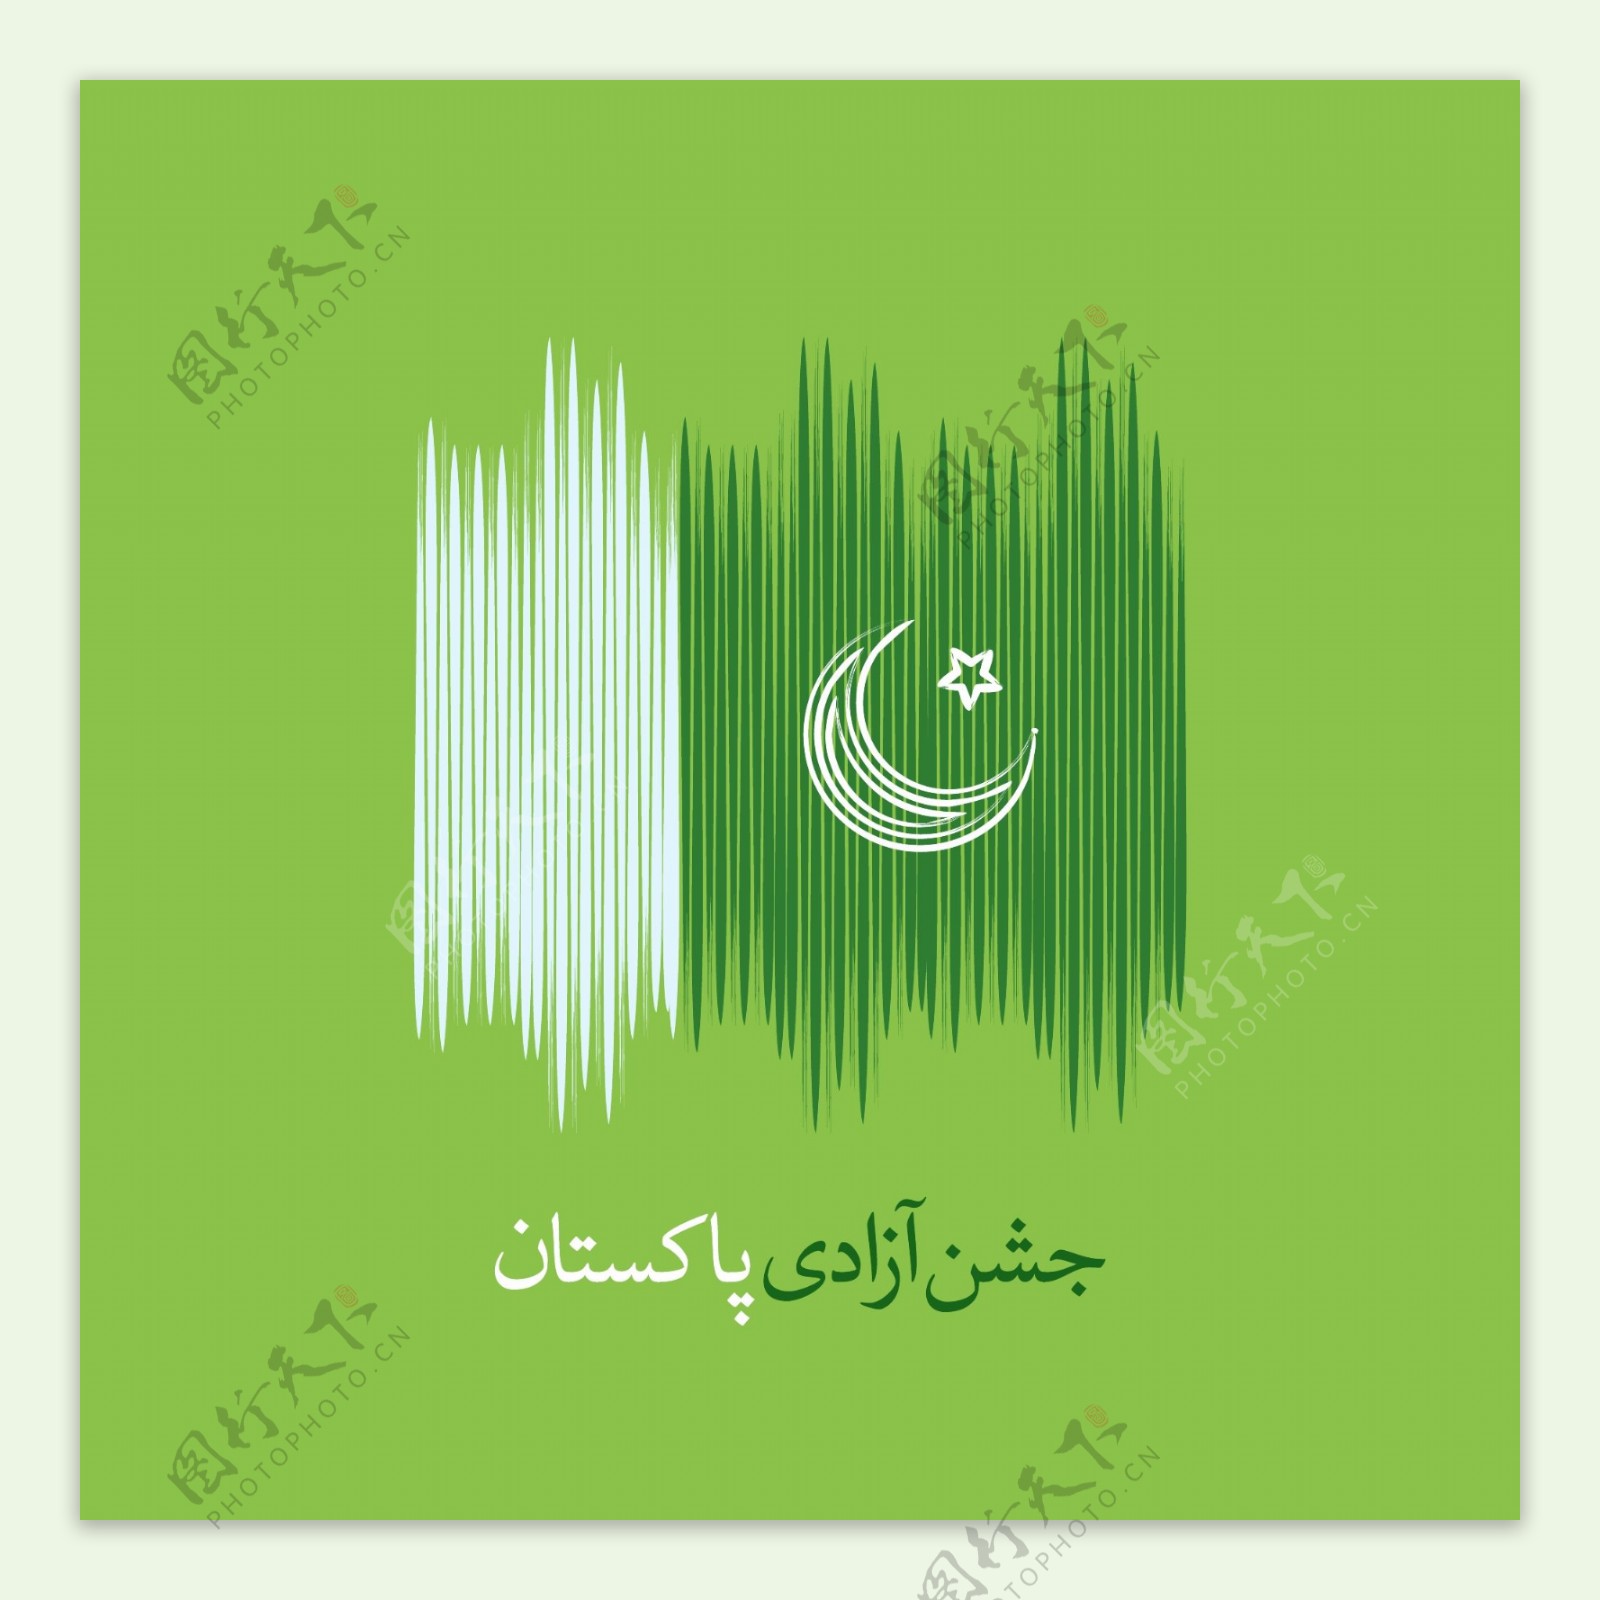 巴基斯坦国旗独立日背景以抽象风格